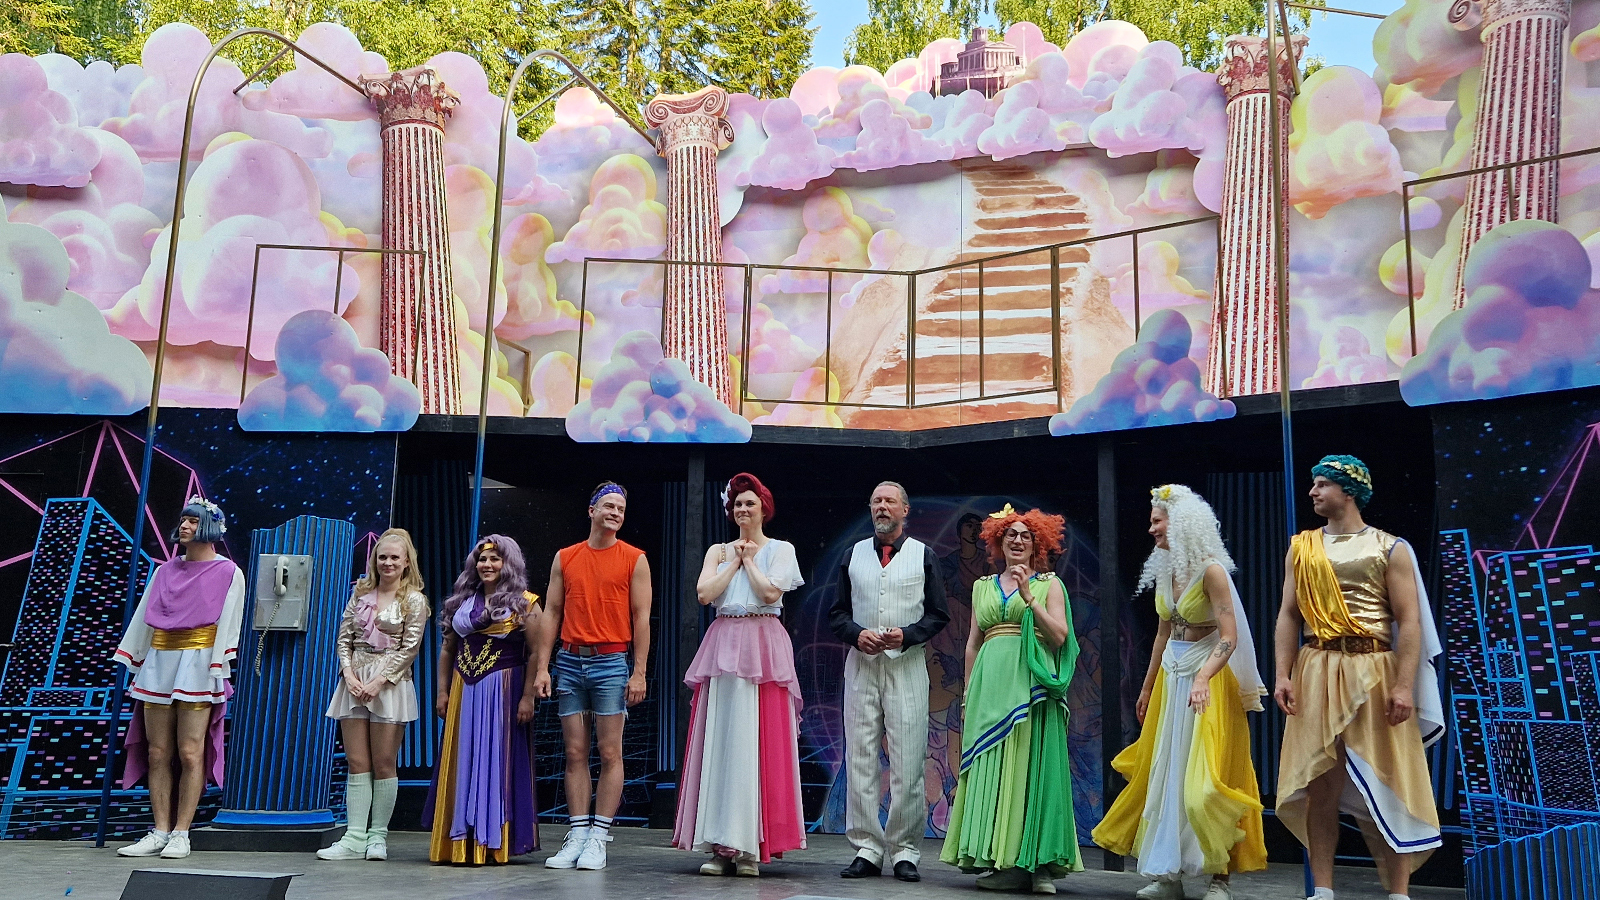 Kuvassa ovat Xanadun näyttelijät lavalla kiittämässä yleisöä. Taustalla on vaalean puna-sinisiä sokeritoppapilviä sekä antiikkisiä pylväitä.